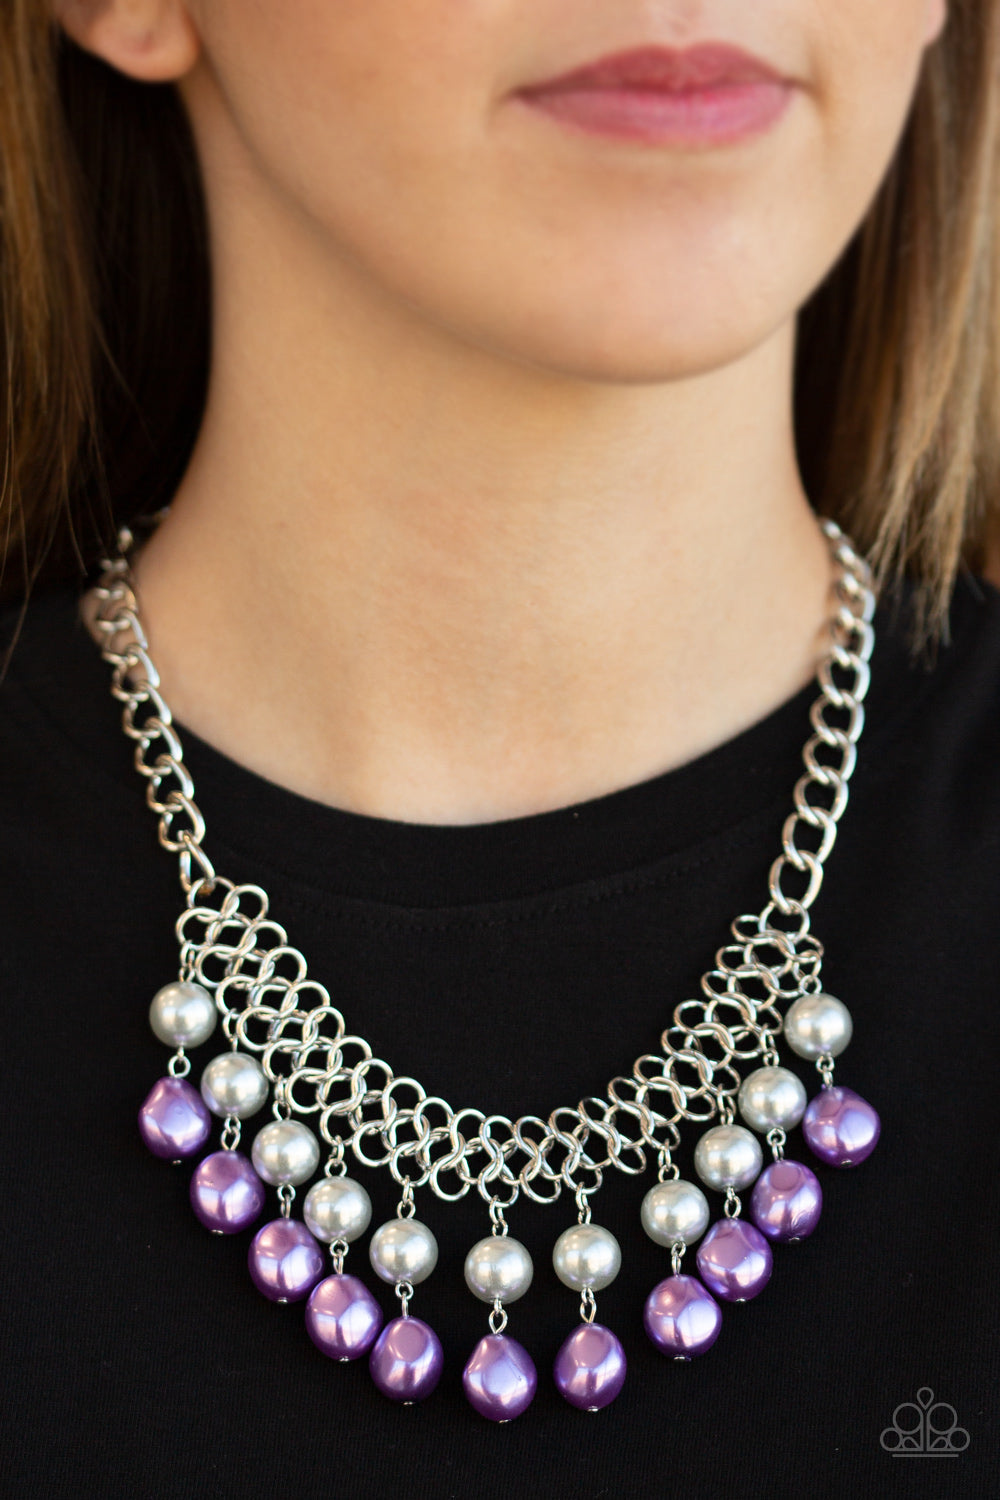 PRE-ORDER - Paparazzi 5th Avenue Fleek - Multi - Necklace & Earrings - $5 Jewelry with Ashley Swint